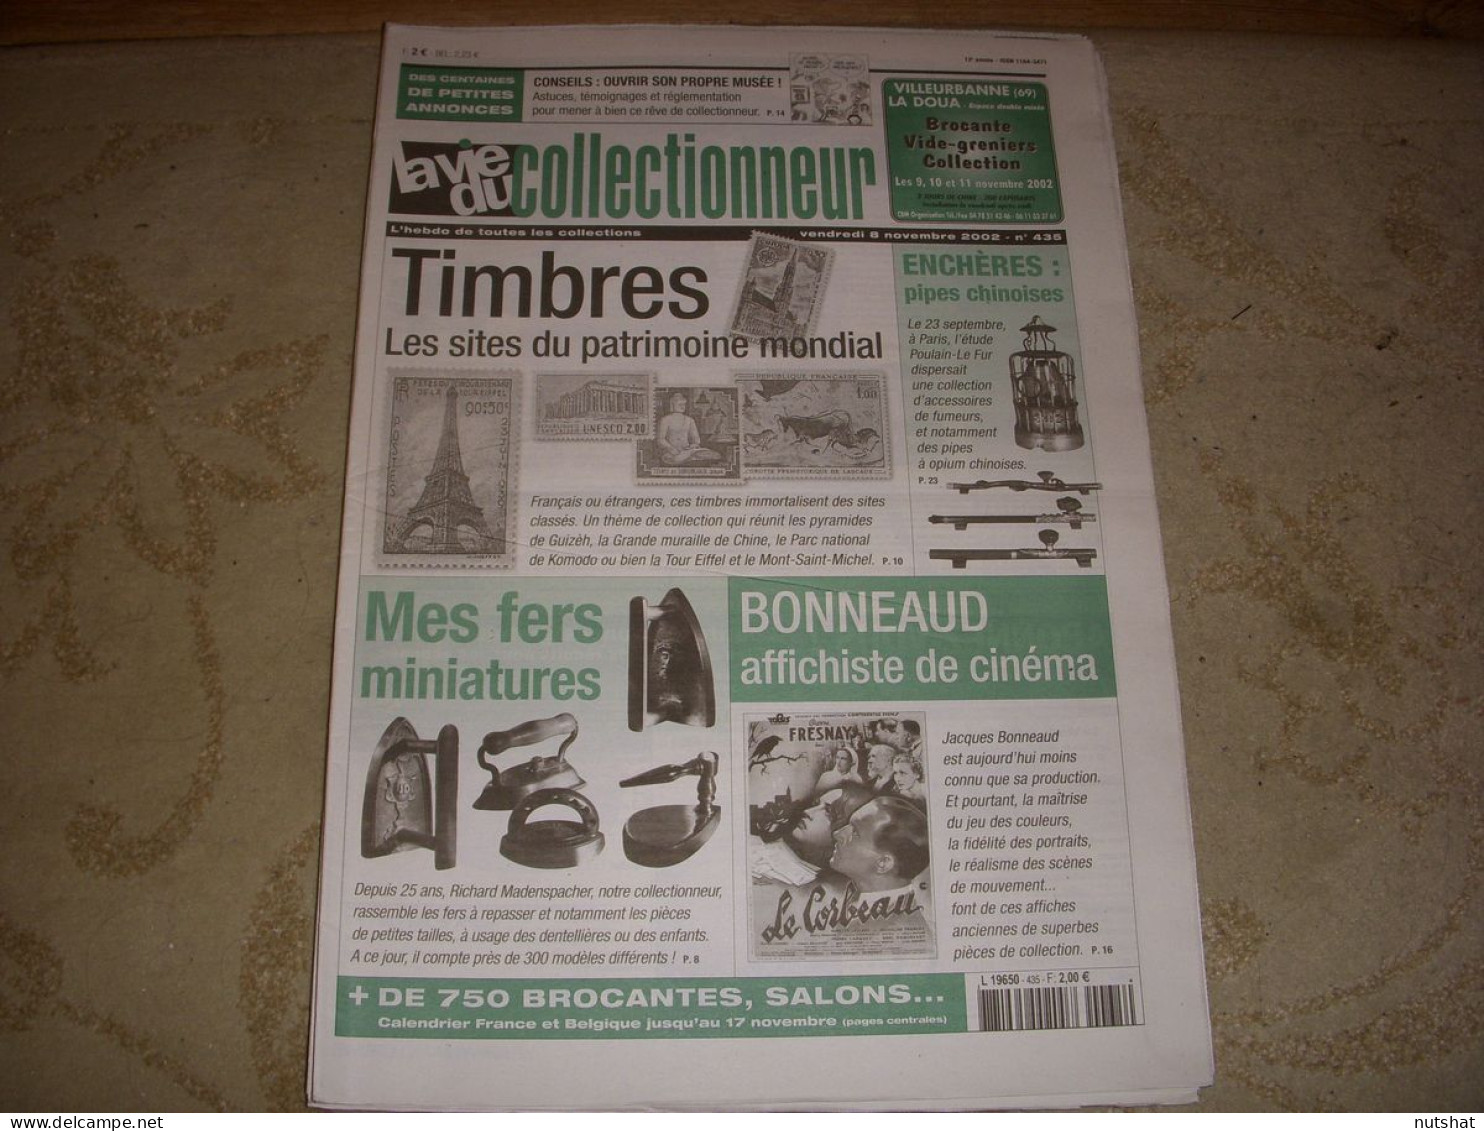 LVC VIE Du COLLECTIONNEUR 435 11.2002 TIMBRES PATRIMOINE MONDIAL FERS MINIATURES  - Brocantes & Collections